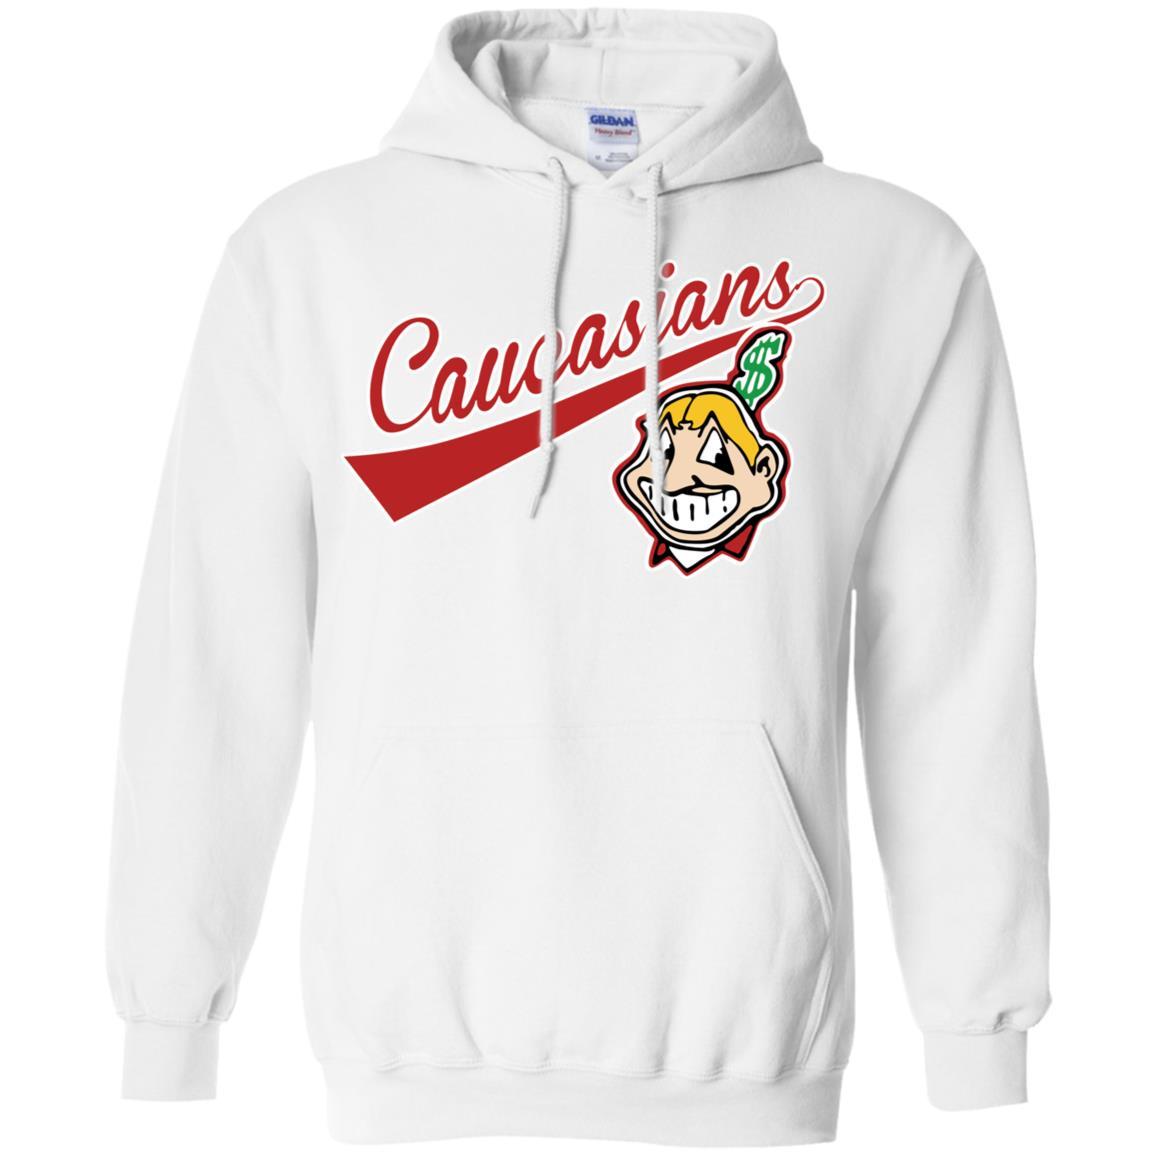 Qanipu Cleveland Caucasians shirt, hoodie, sweatshirt and tank top